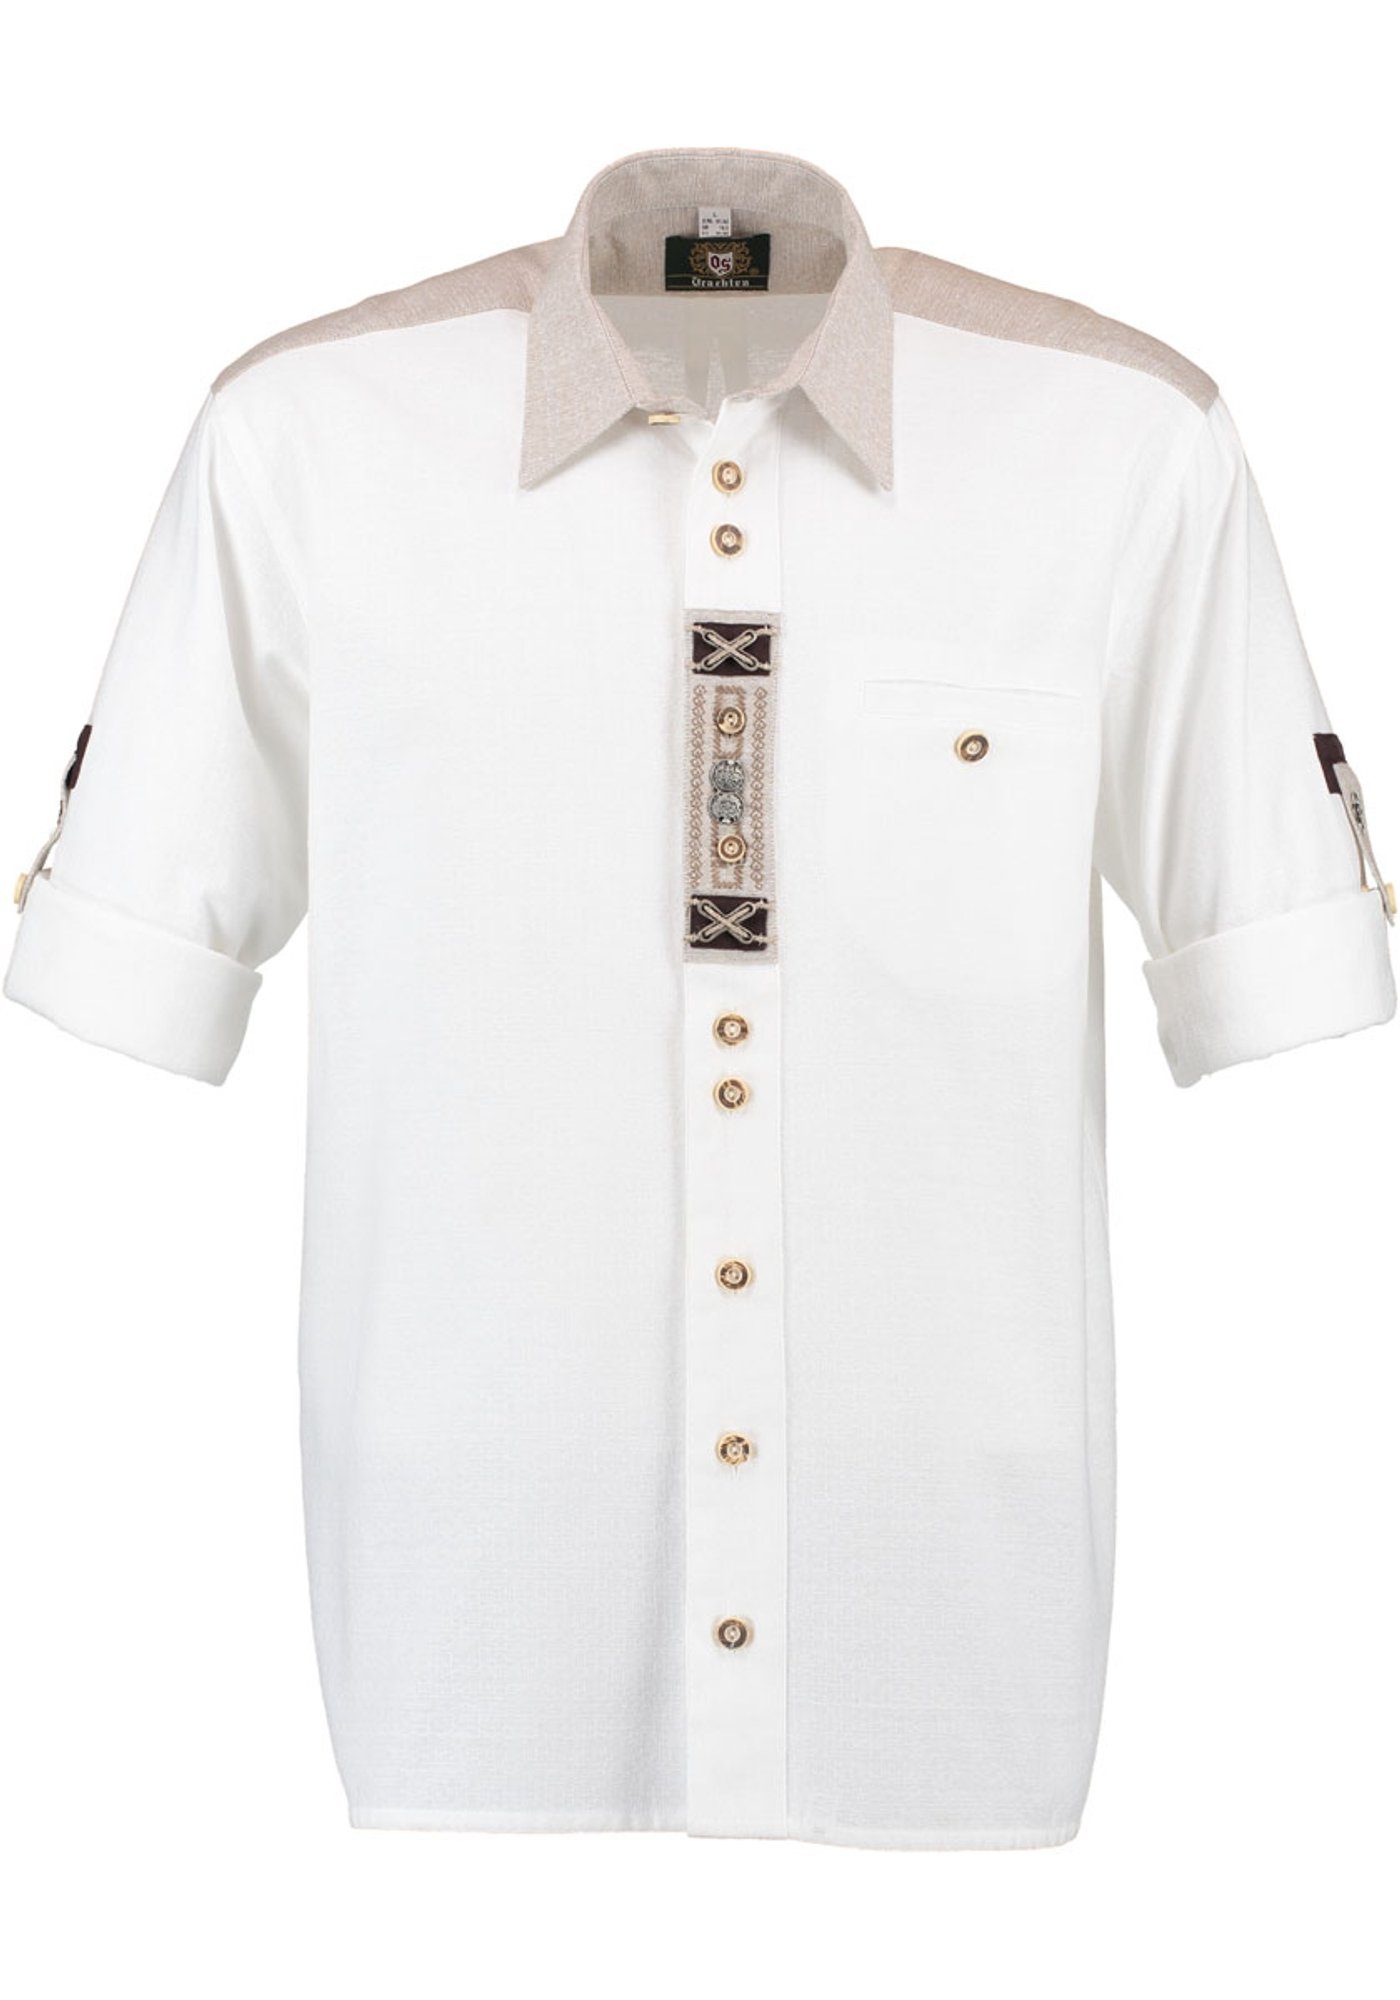 der Knopfleiste mit Nvoion Paspeltasche, Trachtenhemd Langarmhemd weiß OS-Trachten Zierteile auf